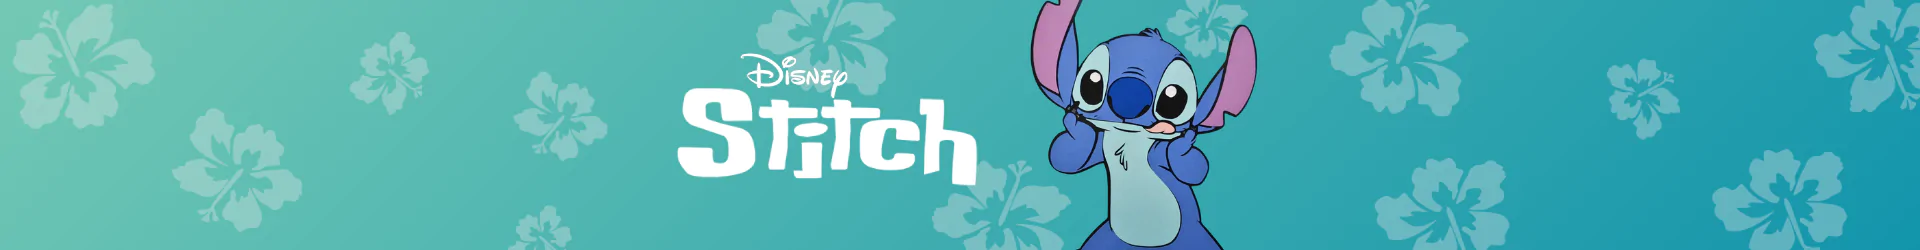 Stitch takarók banner